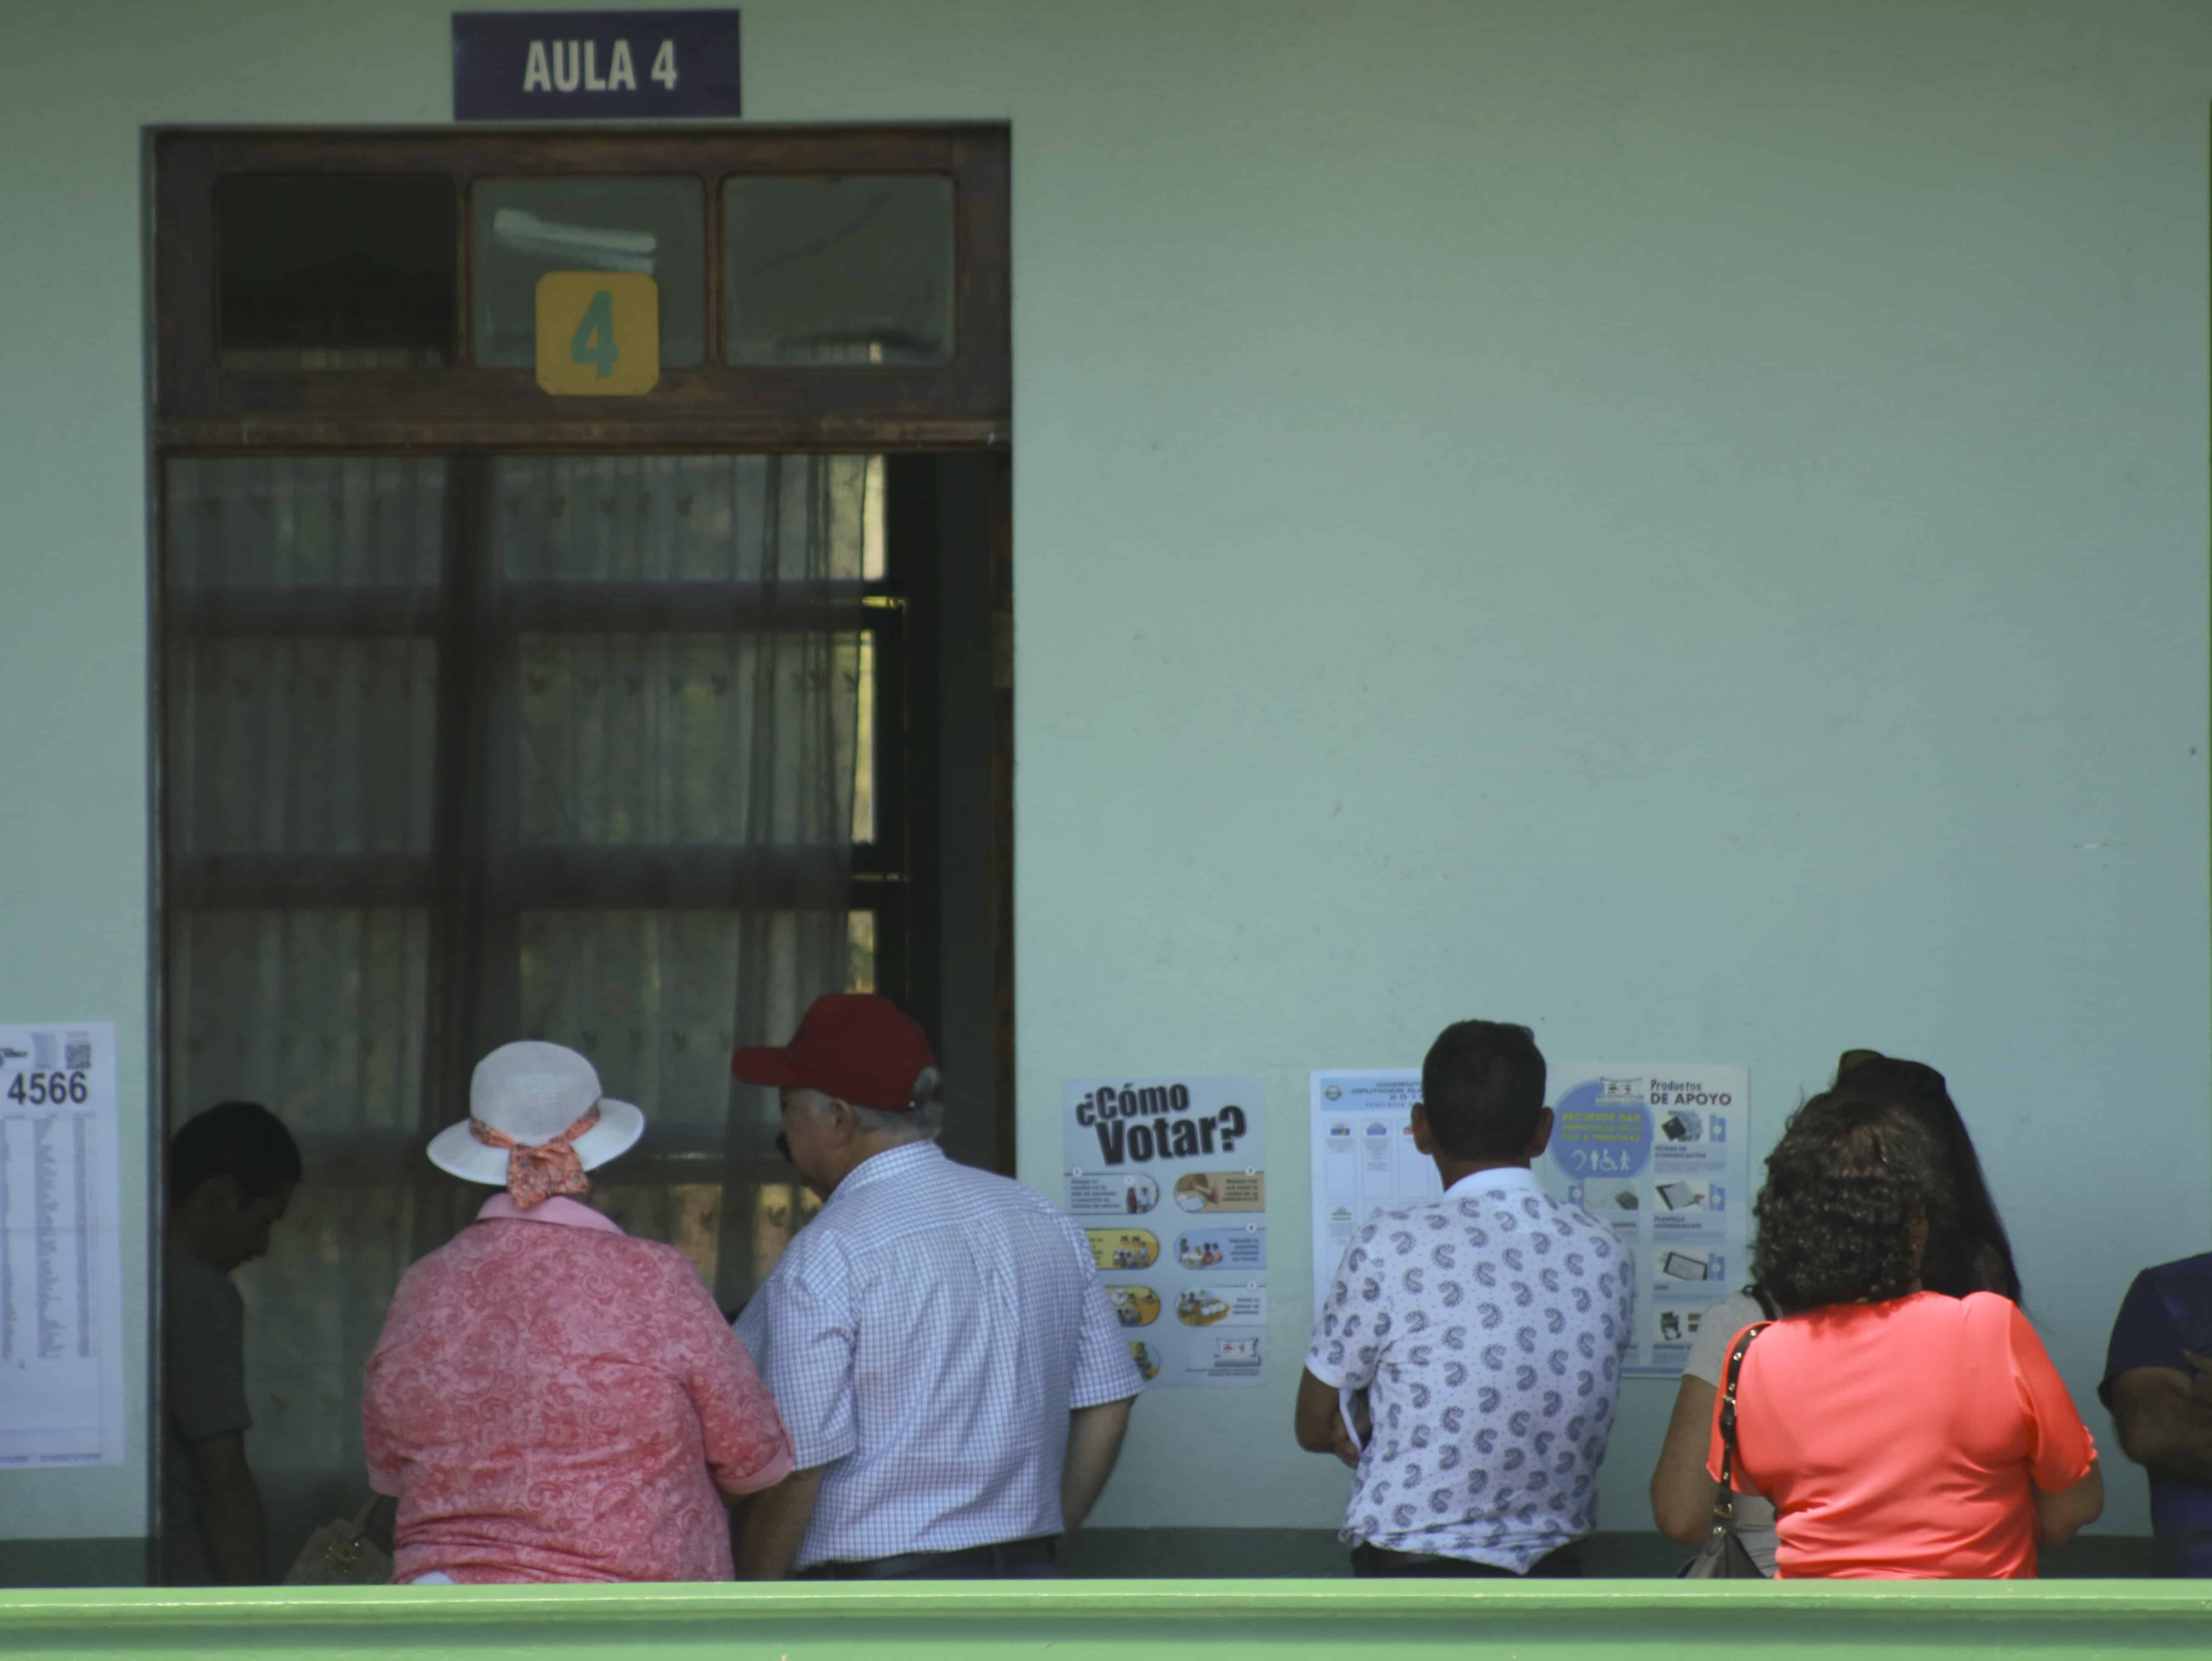 People voting at the Escuela de los Estados Unidos de América in San Joaquín de Flores, Heredia, on Feb. 4, 2018.